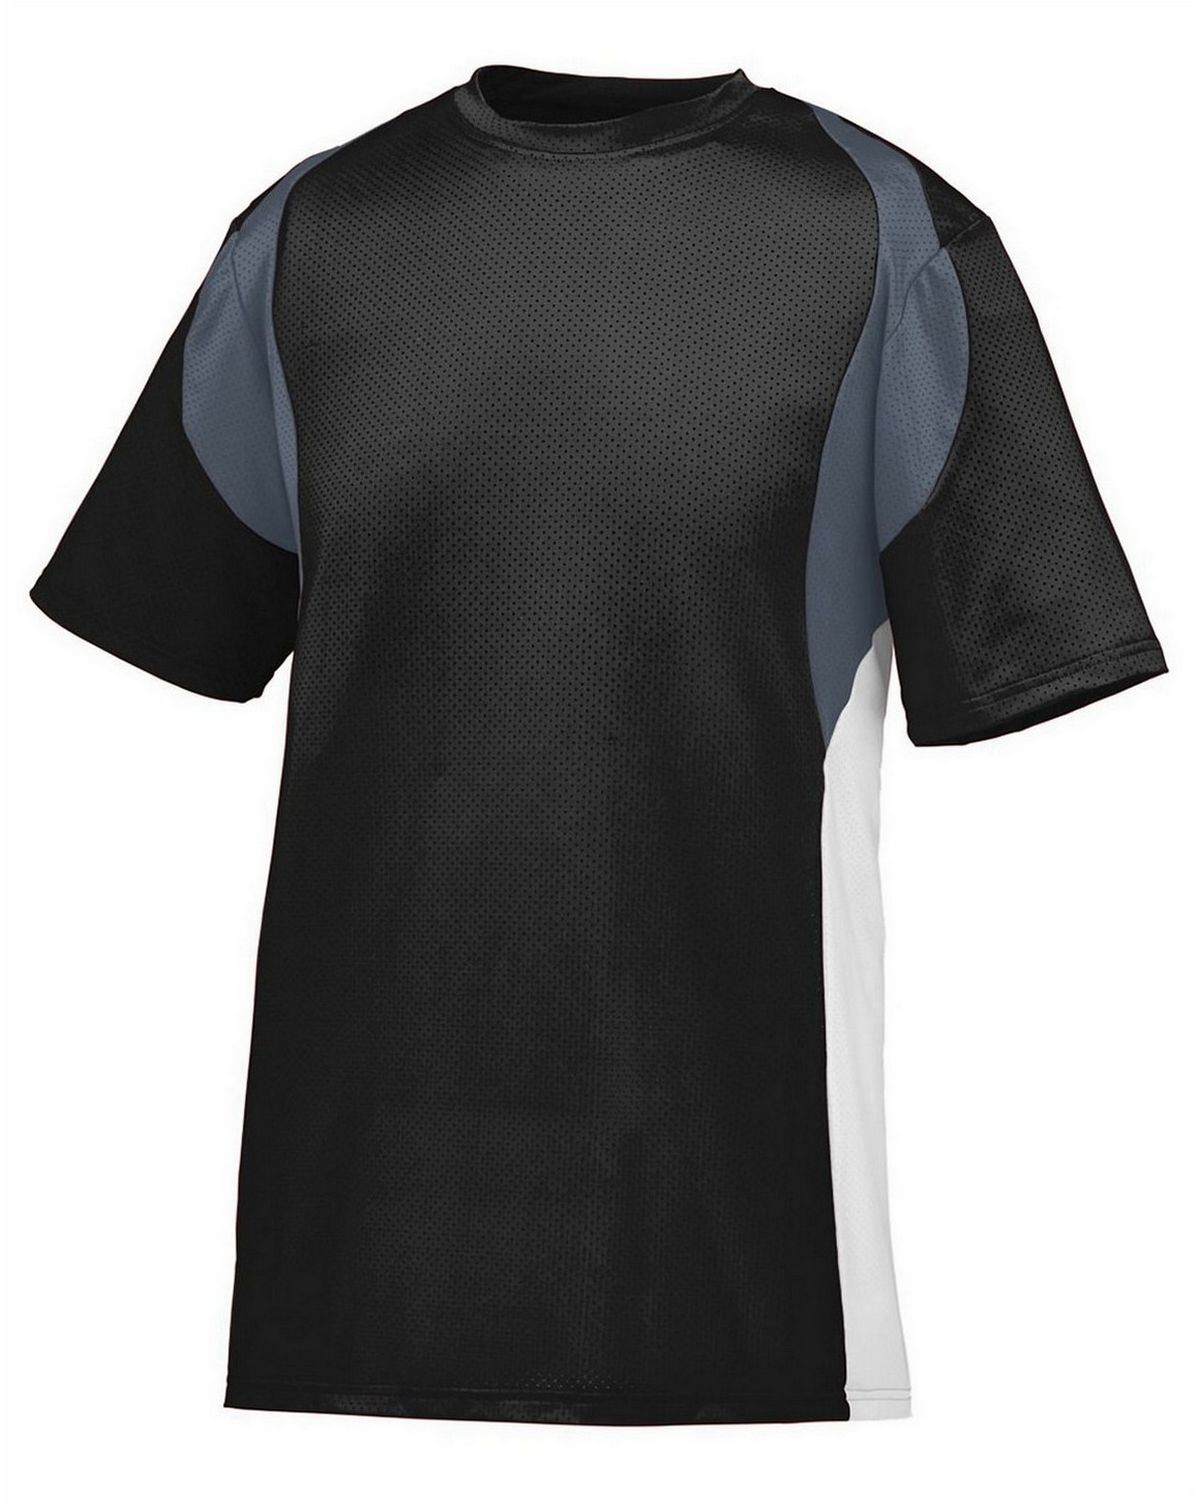 Augusta Sportswear 1516 Youth Wicking Short-Sleeve Jersey